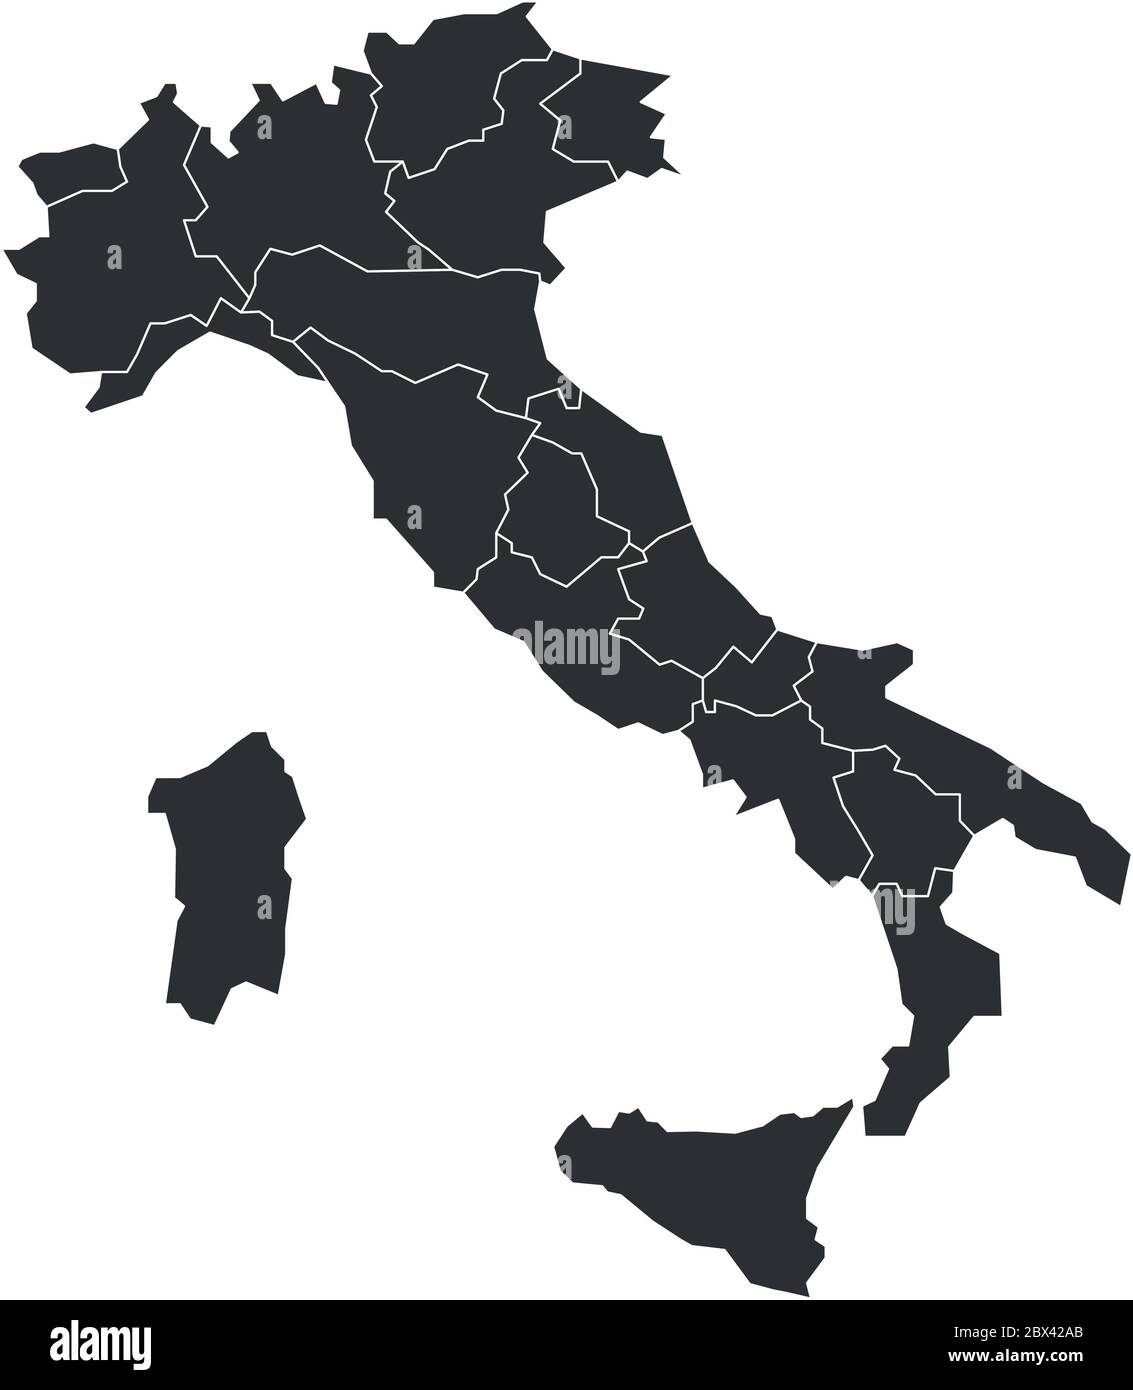 Leere Karte von Italien in 20 Verwaltungsregionen unterteilt. Stock Vektor